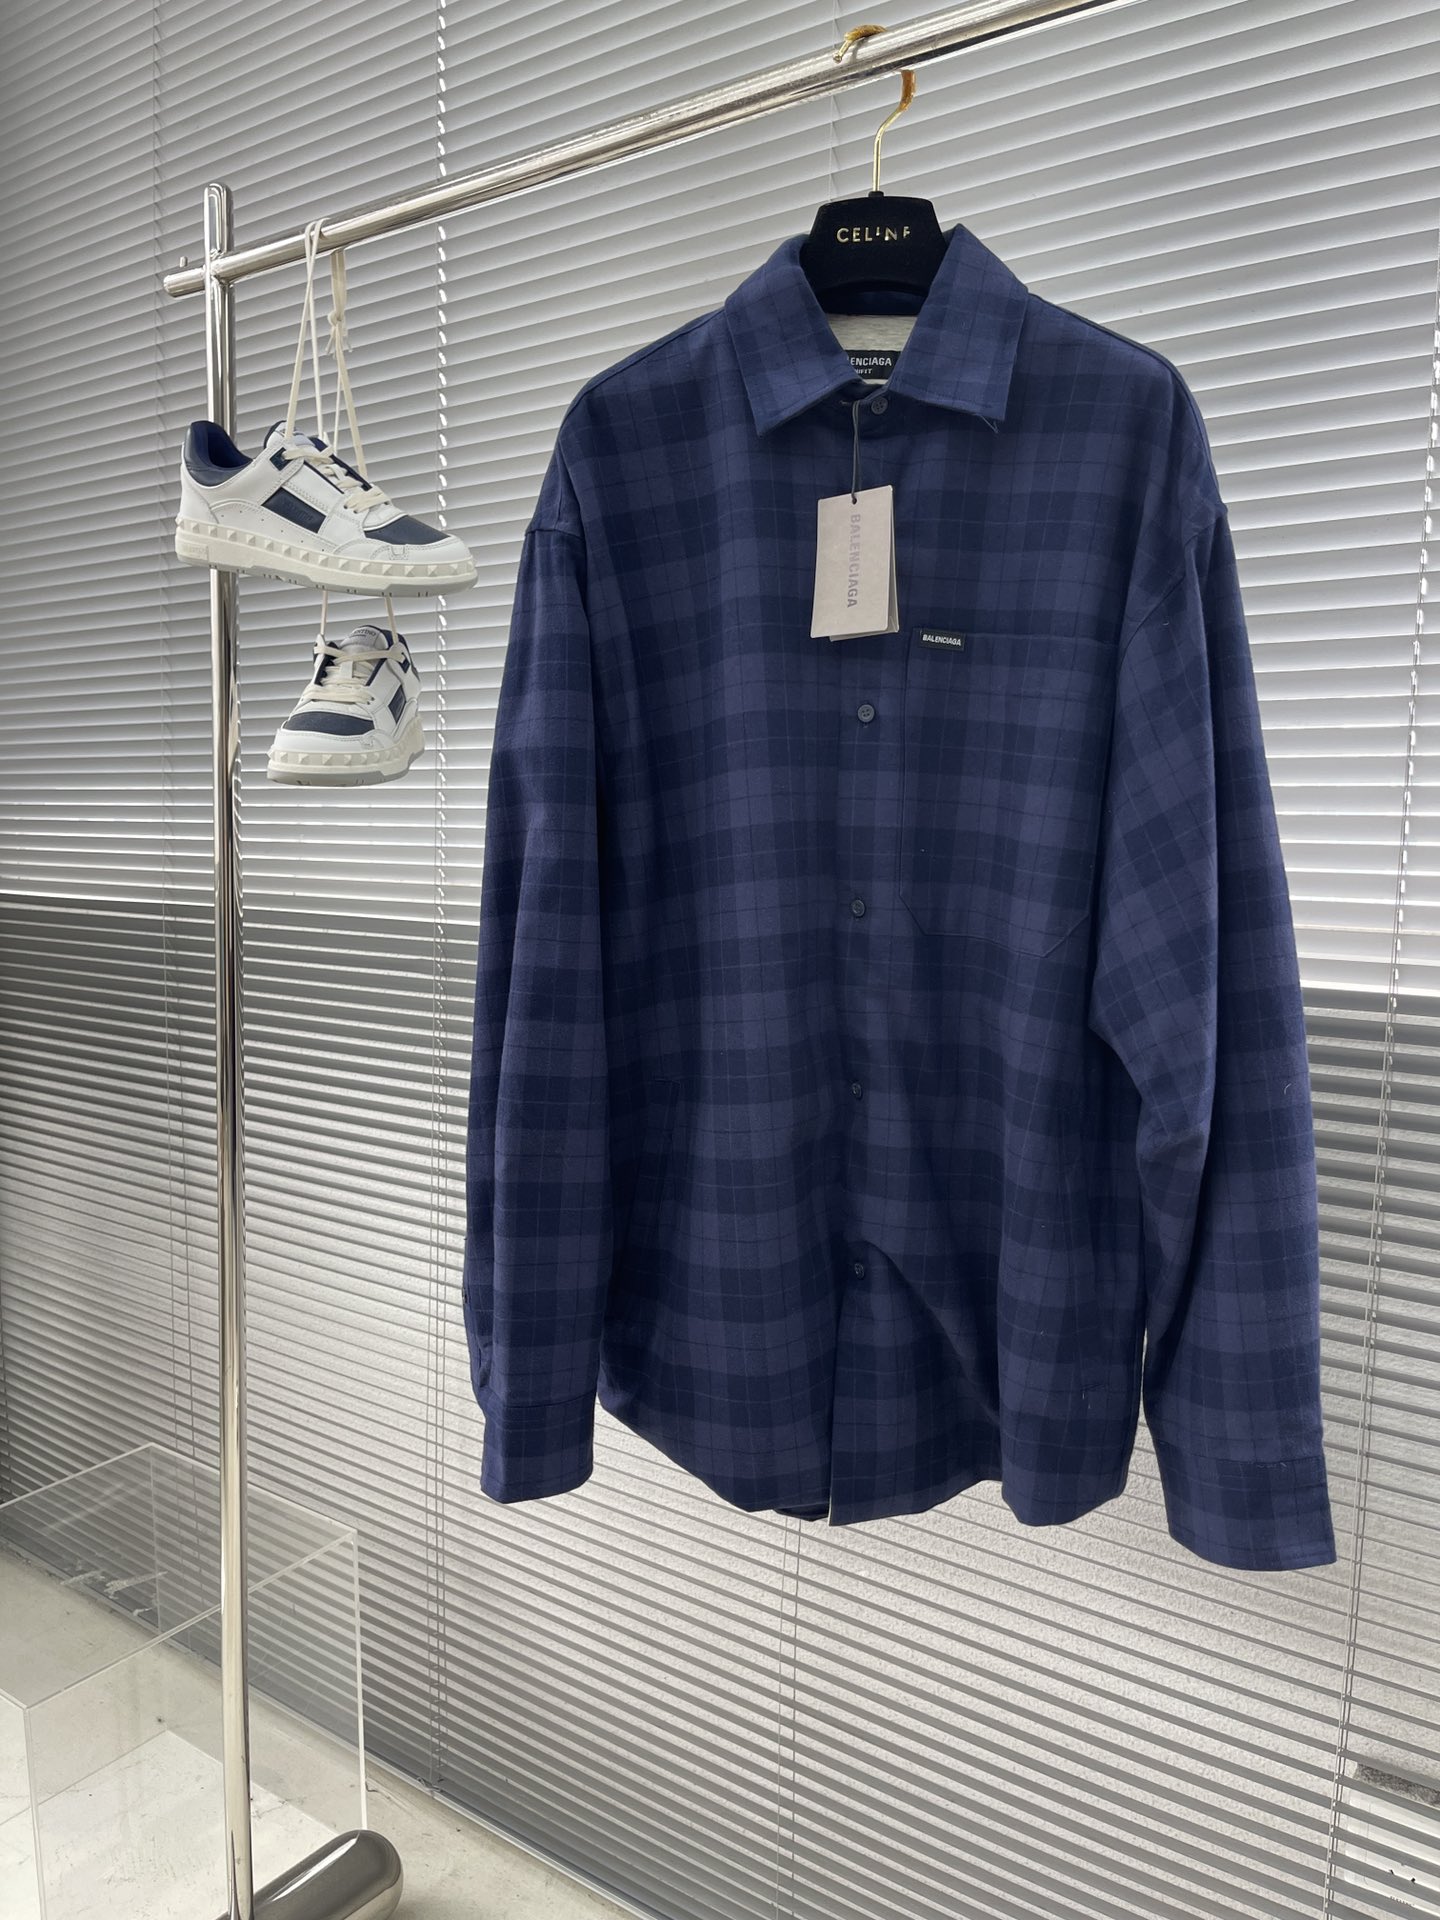 Balenciaga Kleding Jas &Jassen Overhemden Luxe goedkope replica
 Blauw Grijs Borduurwerk Unisex Katoen Lente/Zomercollectie Lange mouw